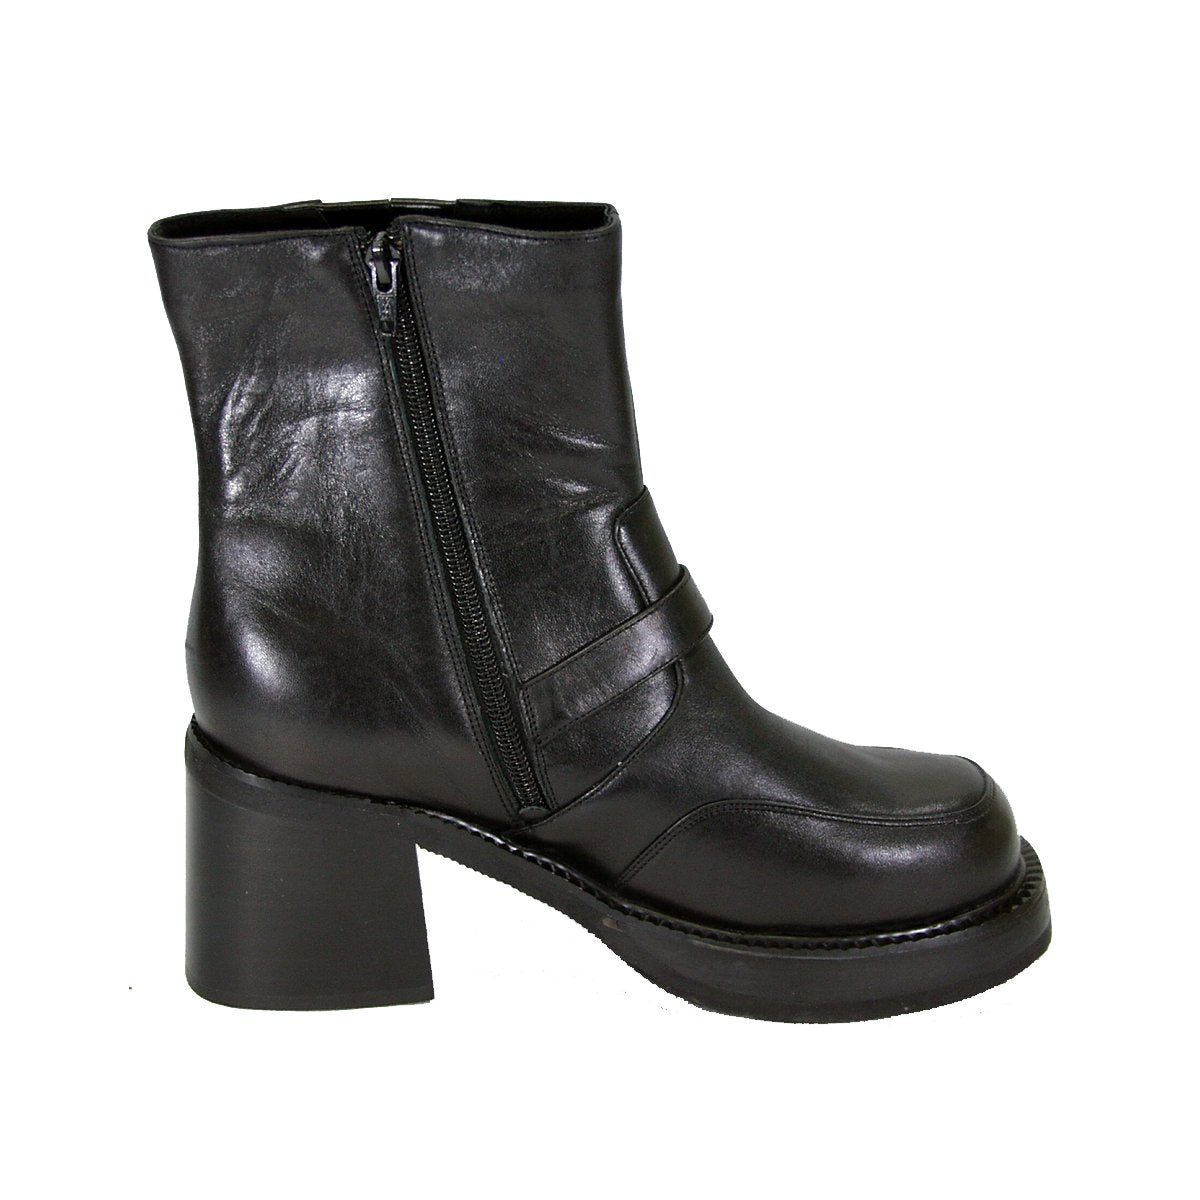 PEERAGE Tony Men's Medium Width Leather Boots